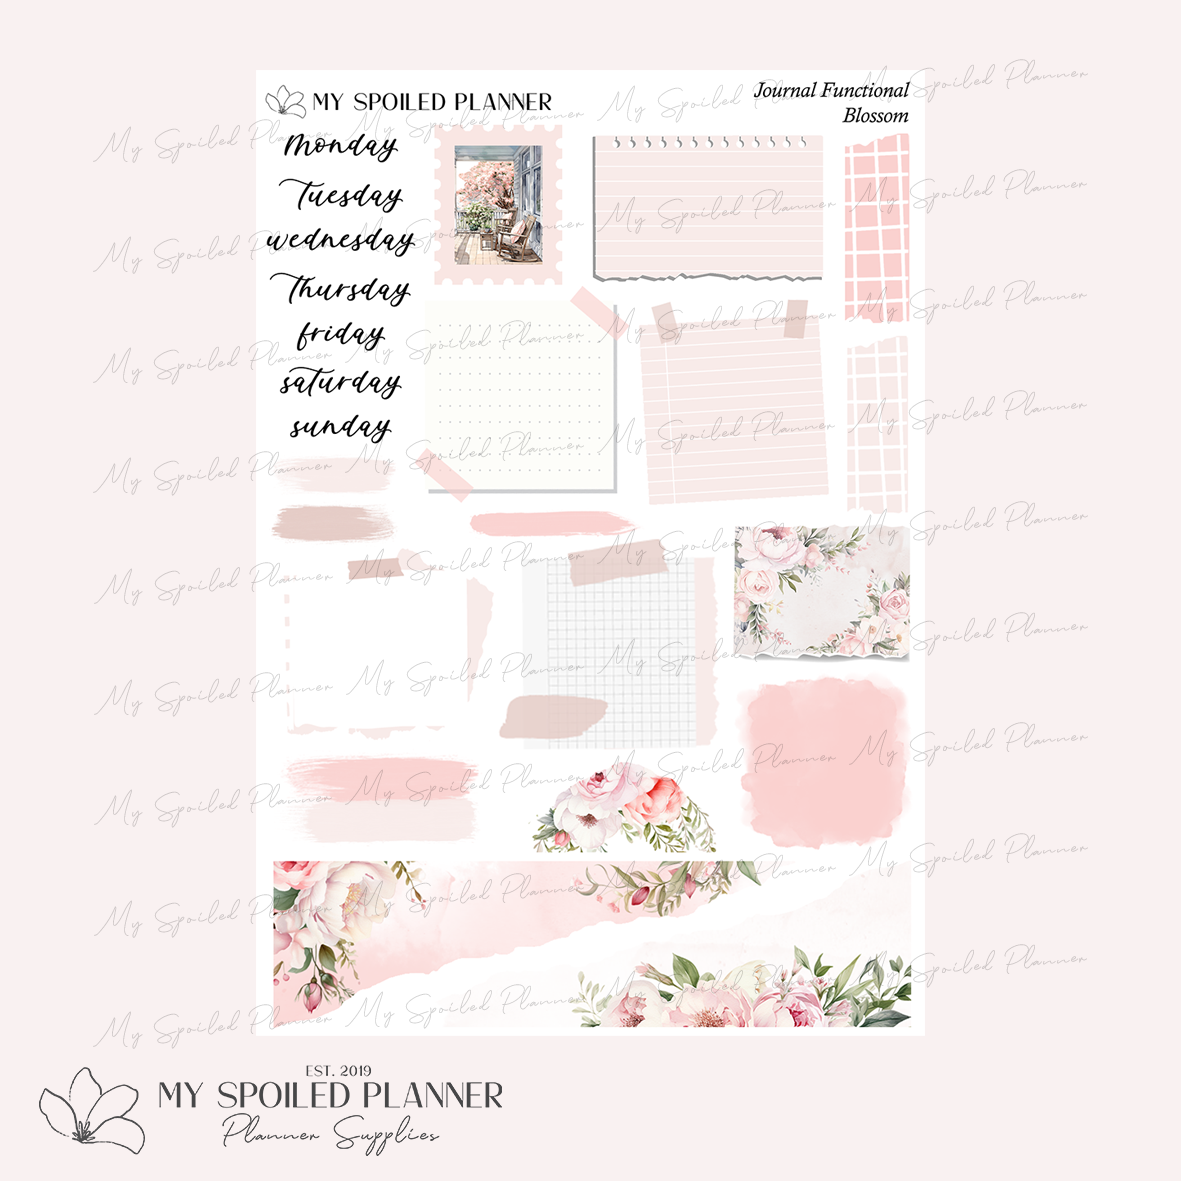 Blossom Journaling Kit